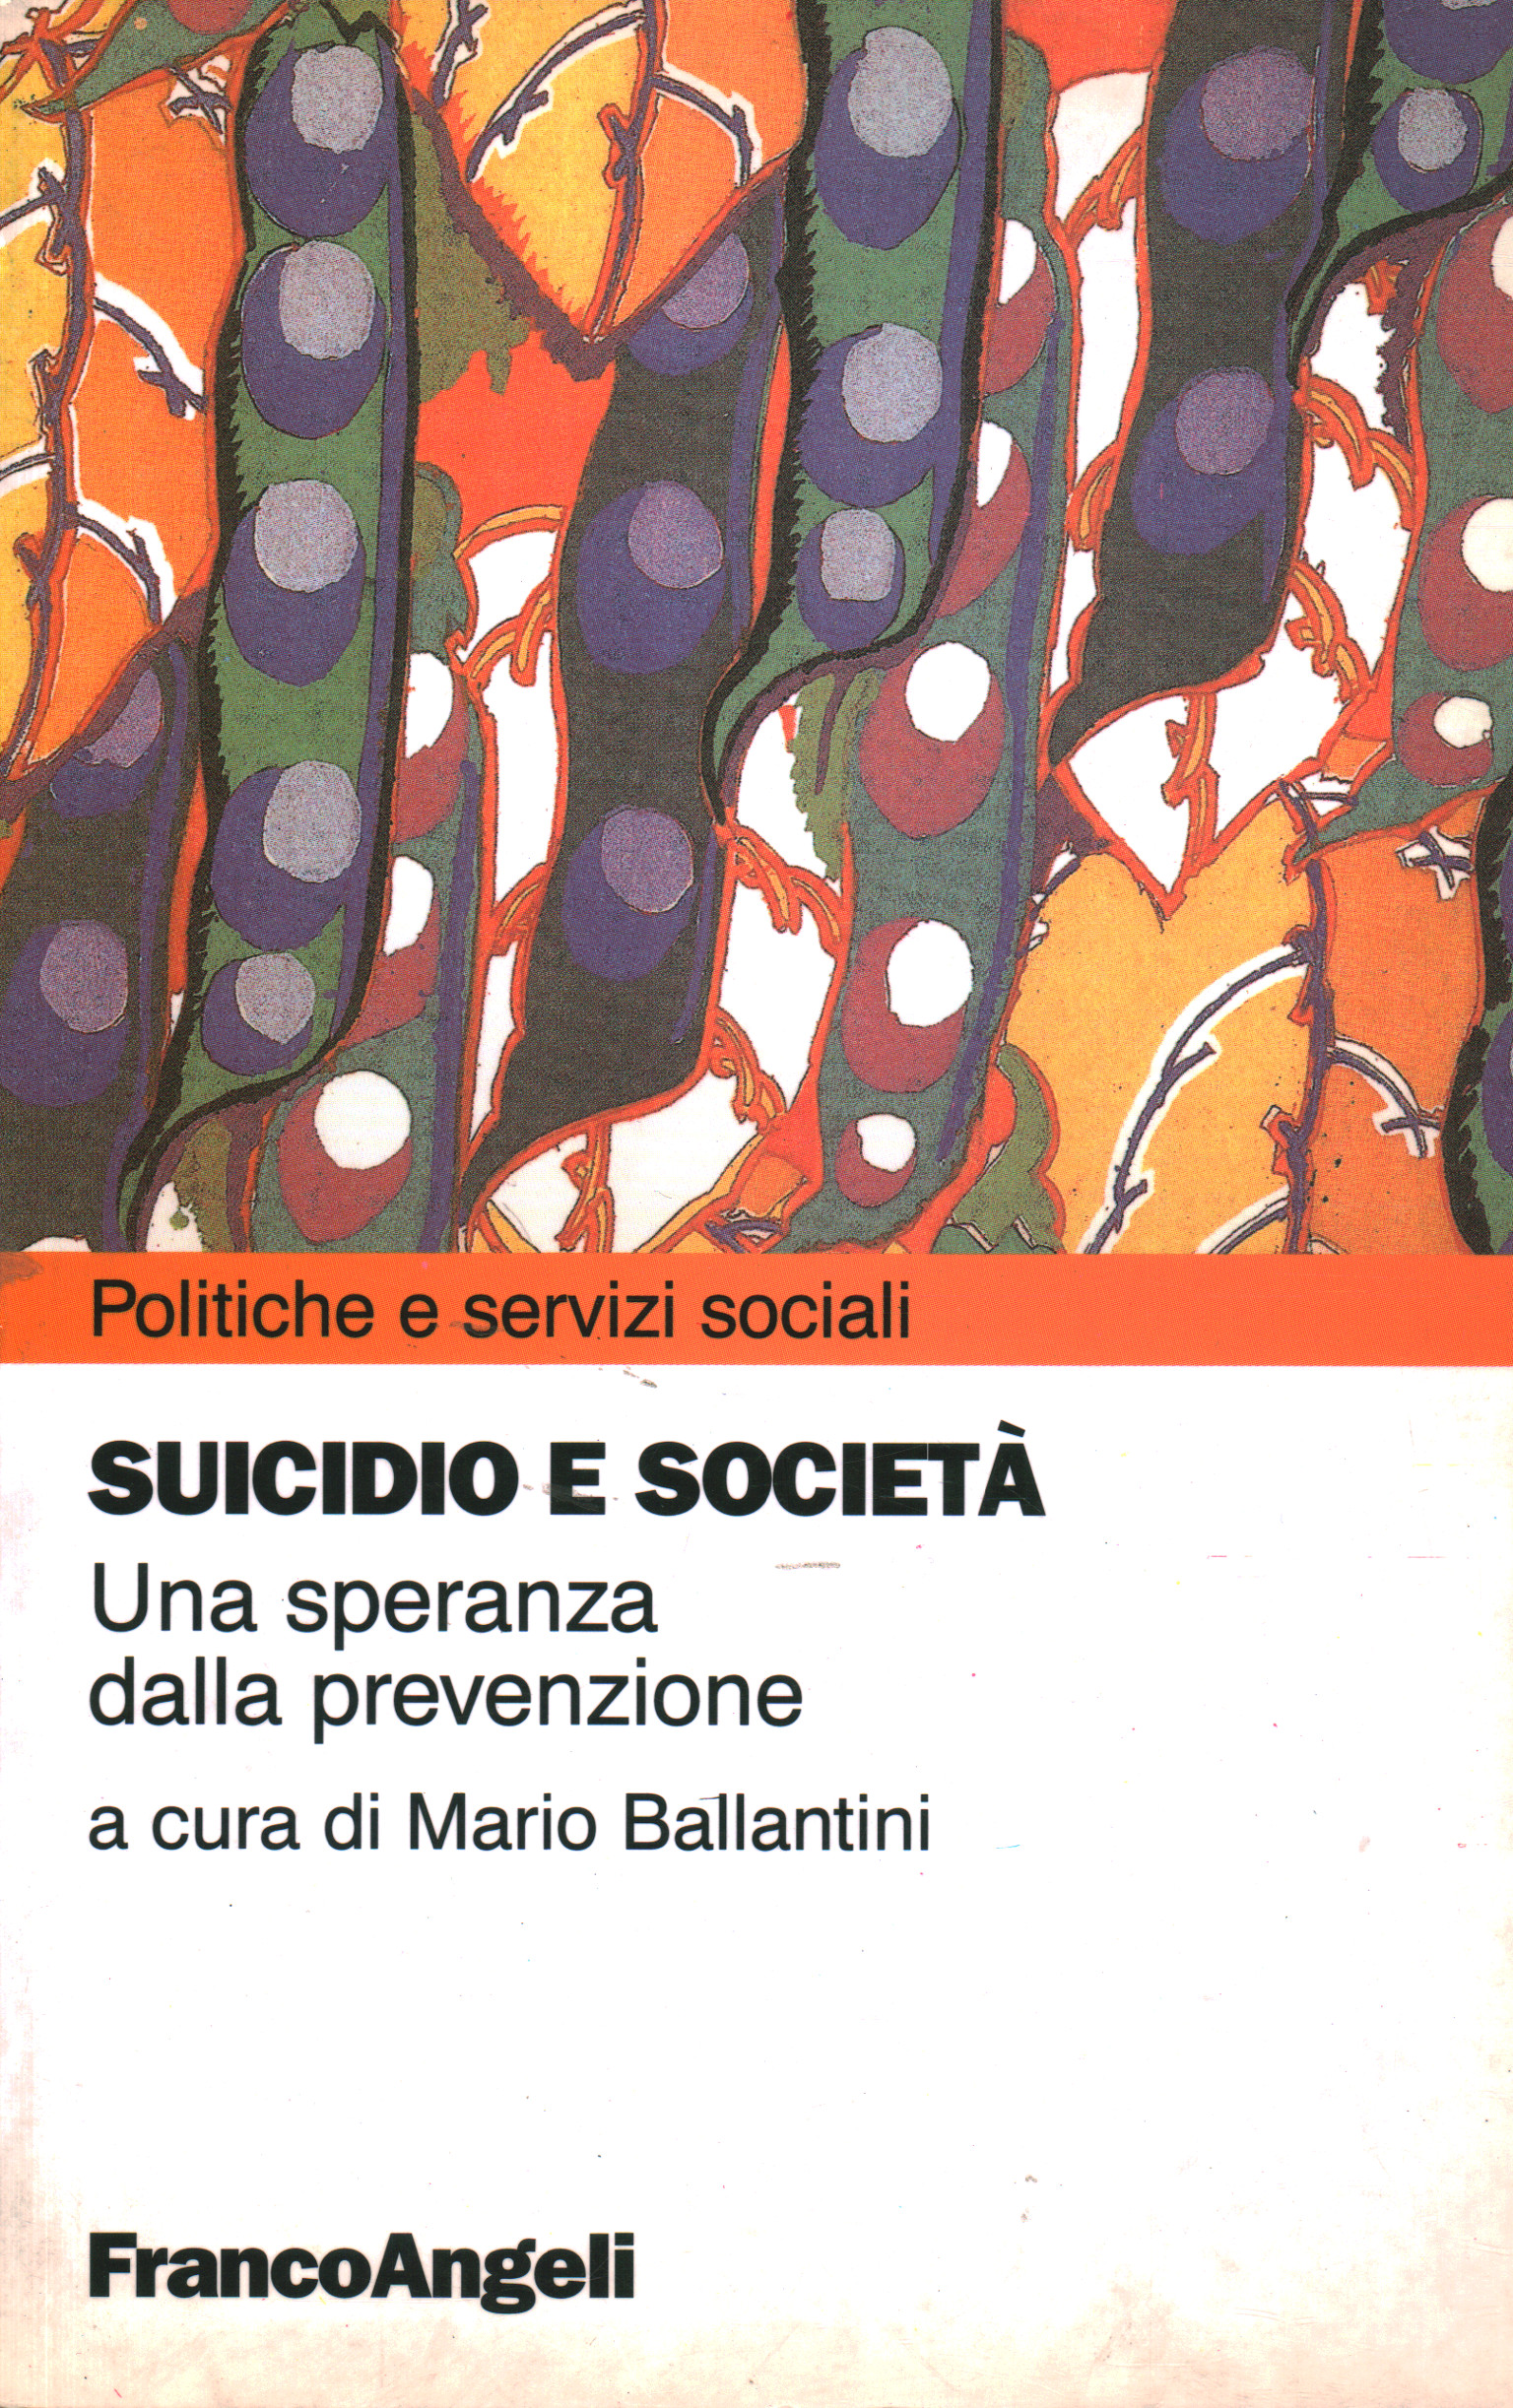 Suicide et de la société, Mario Ballantini